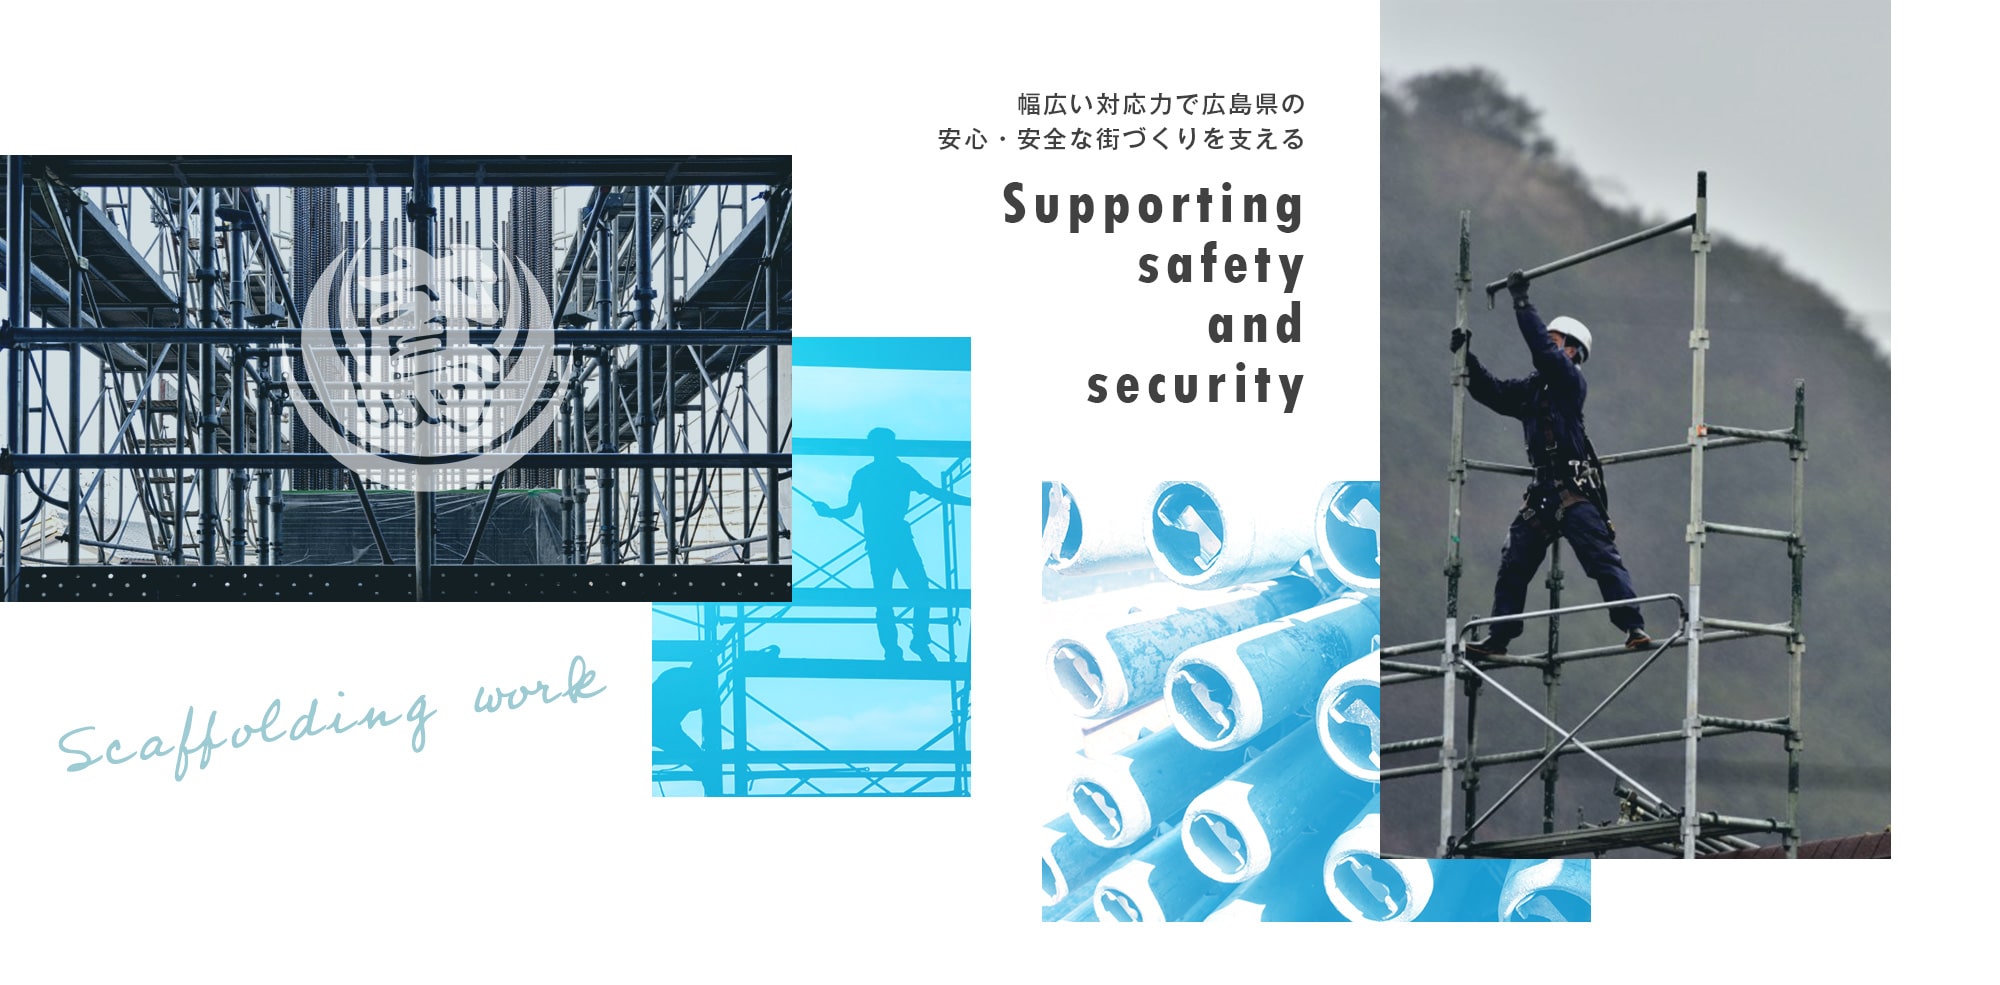 幅広い対応力で広島県の安心・安全な街づくりを支える